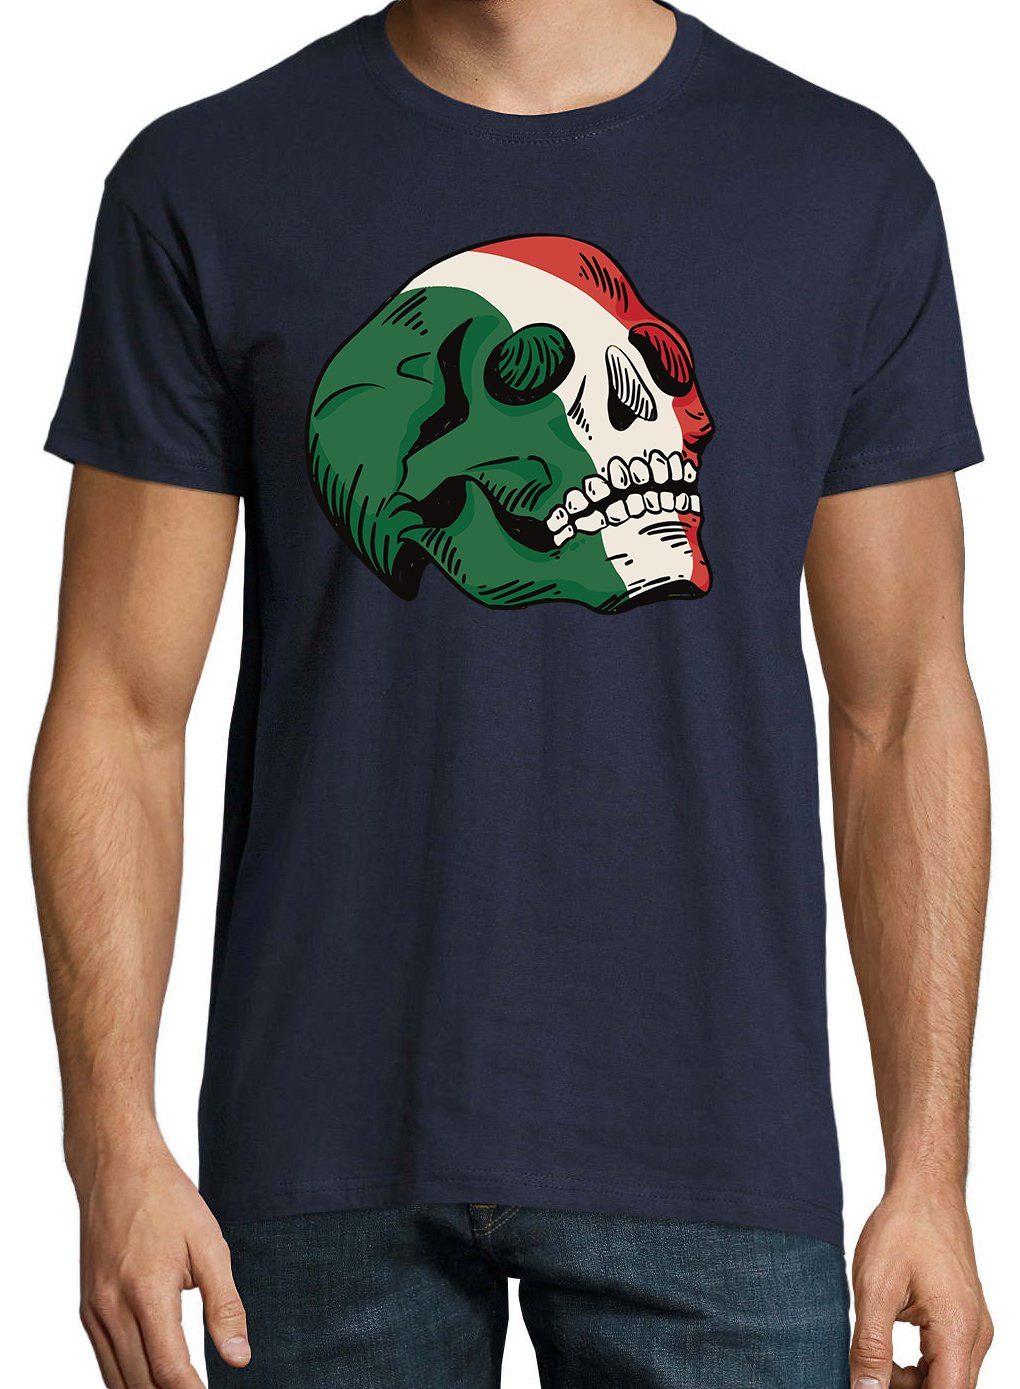 Frontprint T-Shirt trendigem Herren Youth Schädel mit Designz Shirt Navyblau Italy